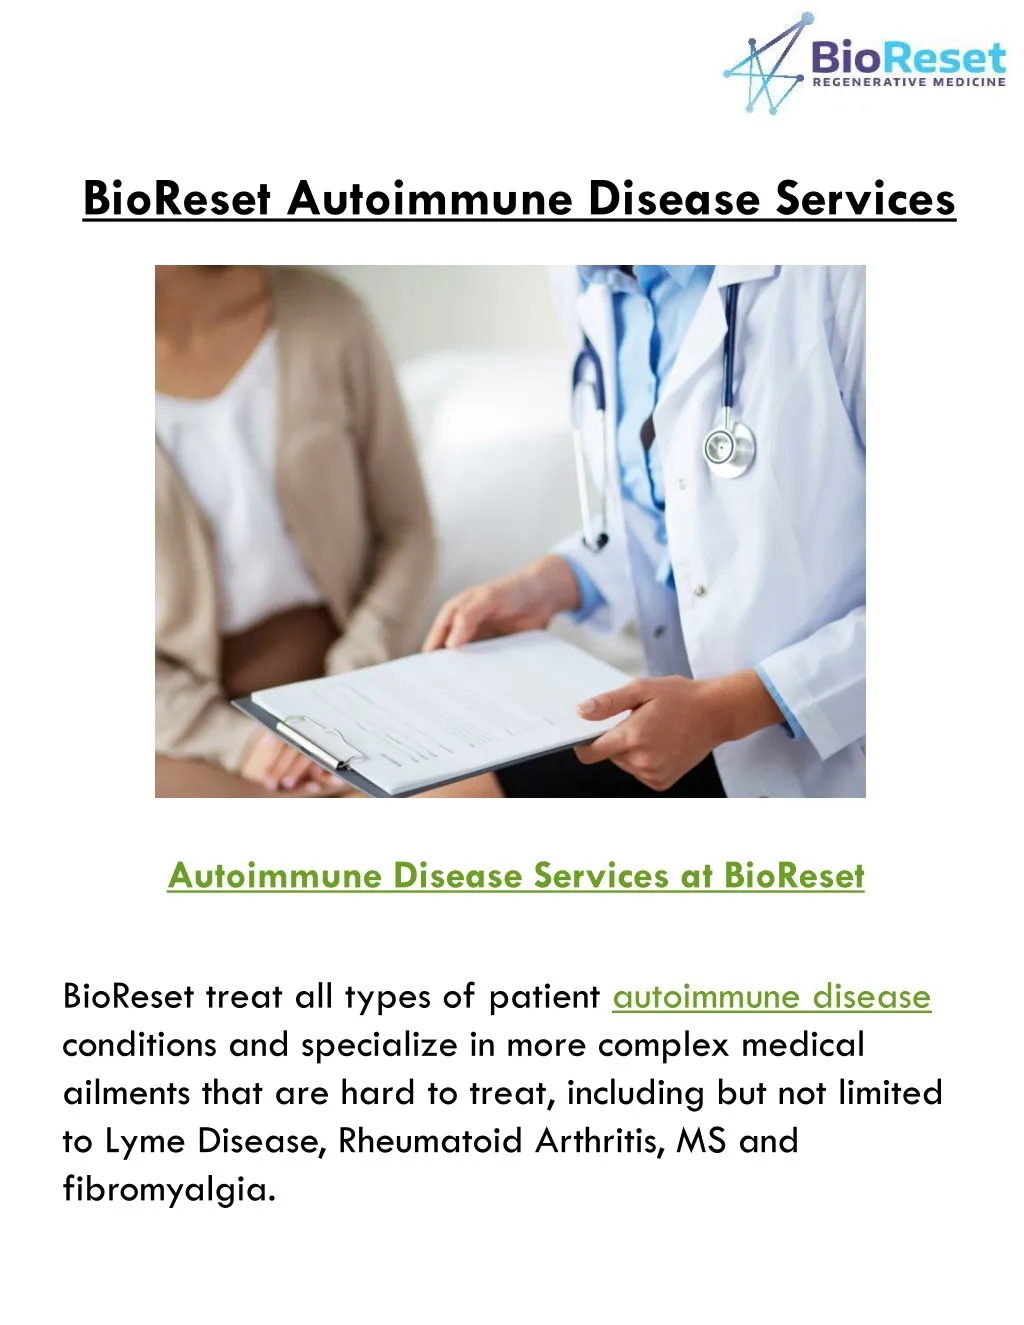 bioreset autoimmune disease services